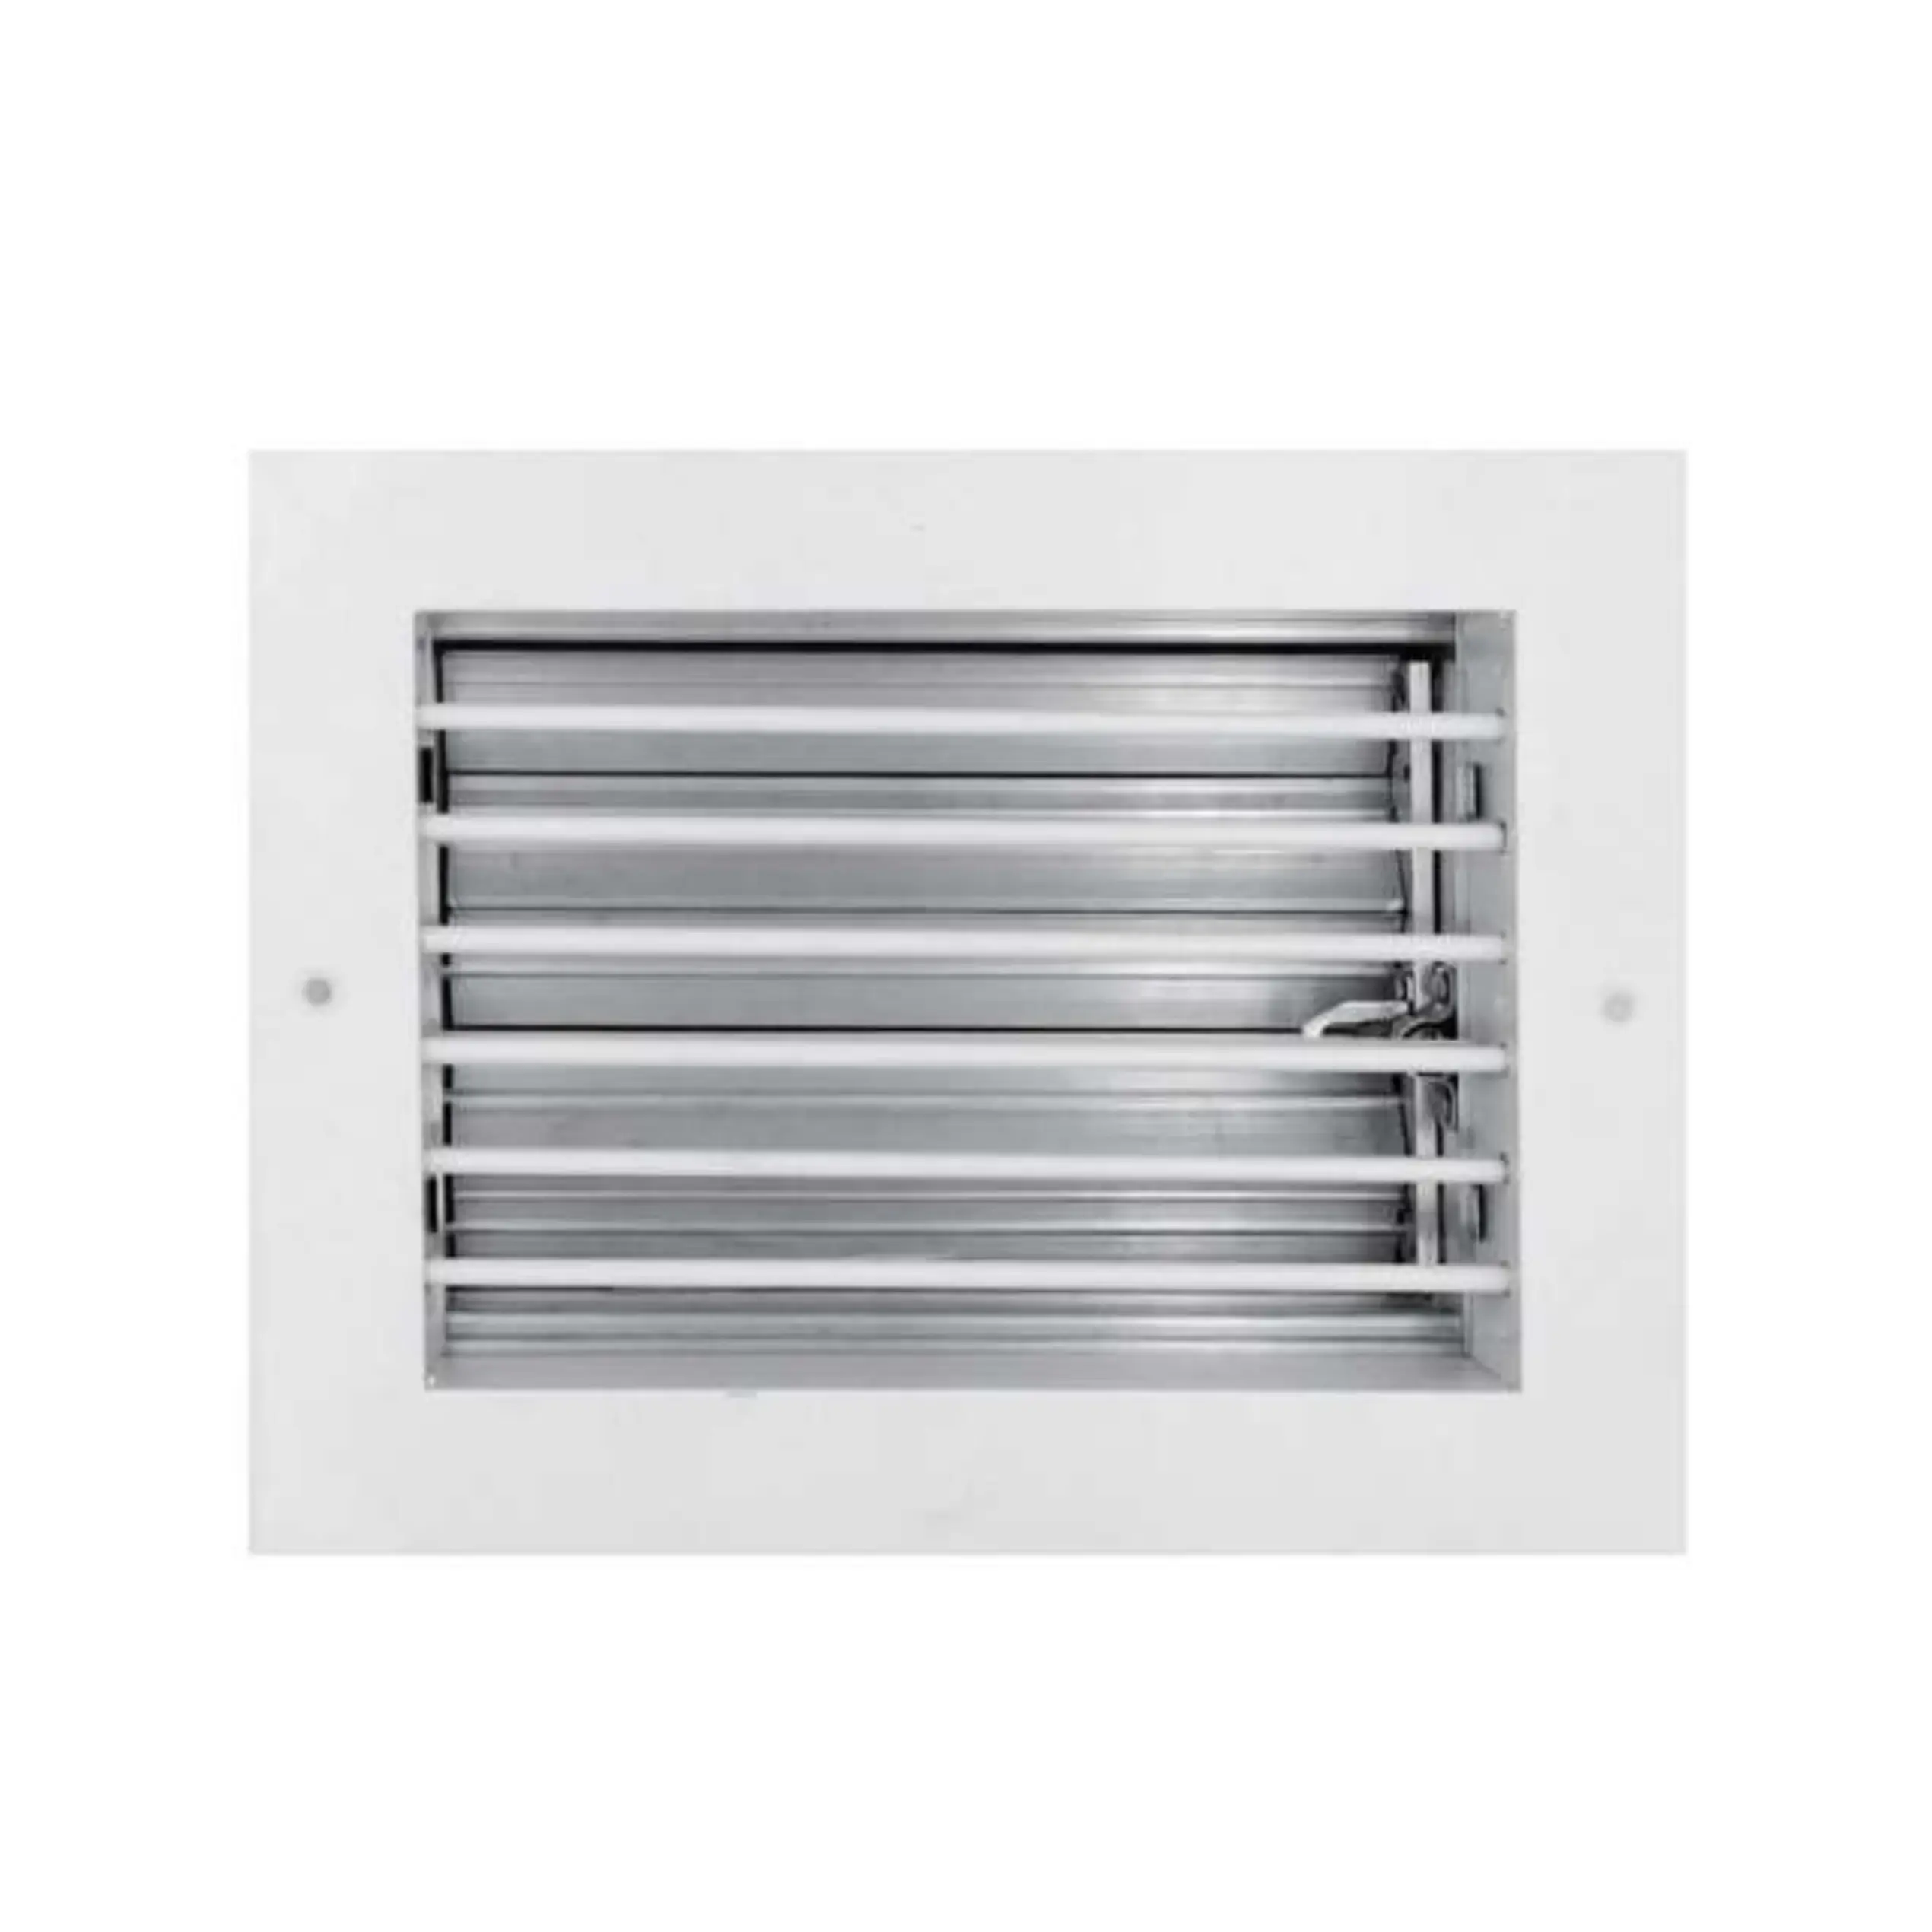 Peças de ventilação de ar condicionado de alumínio para montagem em parede, grade de ar de alumínio com deflexão única